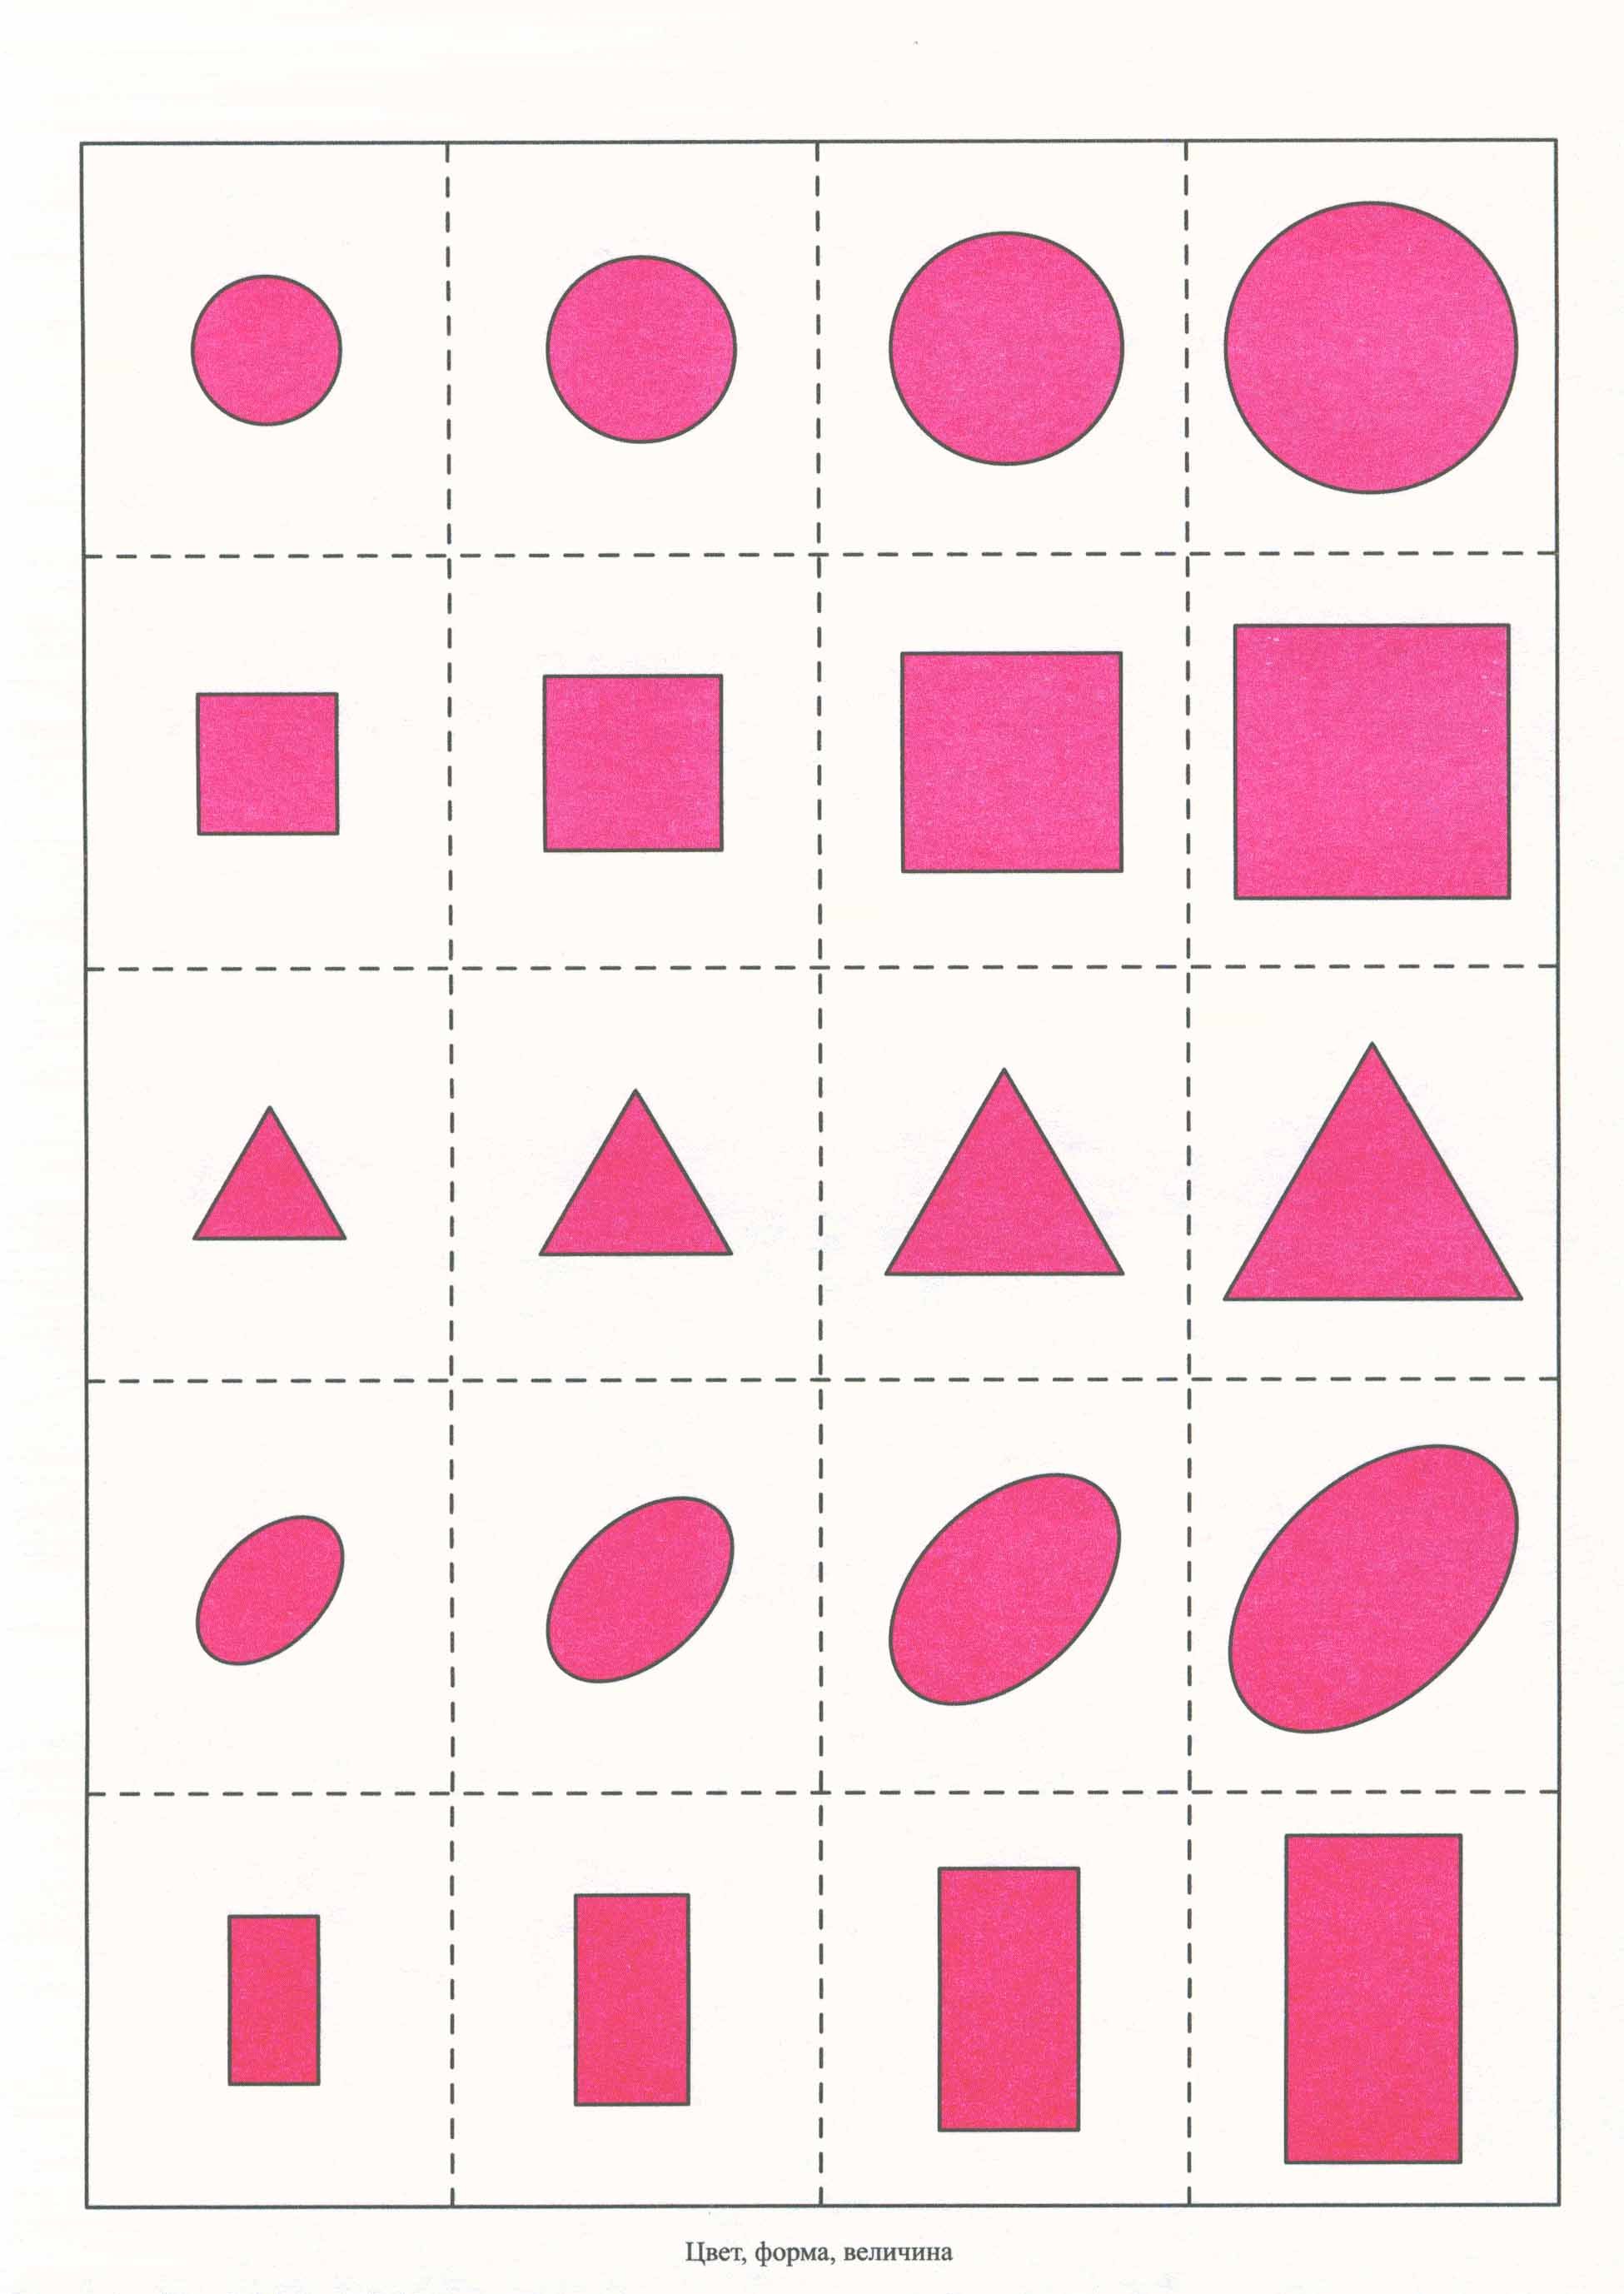 Цвет размер. Геометрические фигуры для детей. Цвет, форма, величина. Раздаточный материал геометрические фигуры. Цвет форма величина для дошкольников.